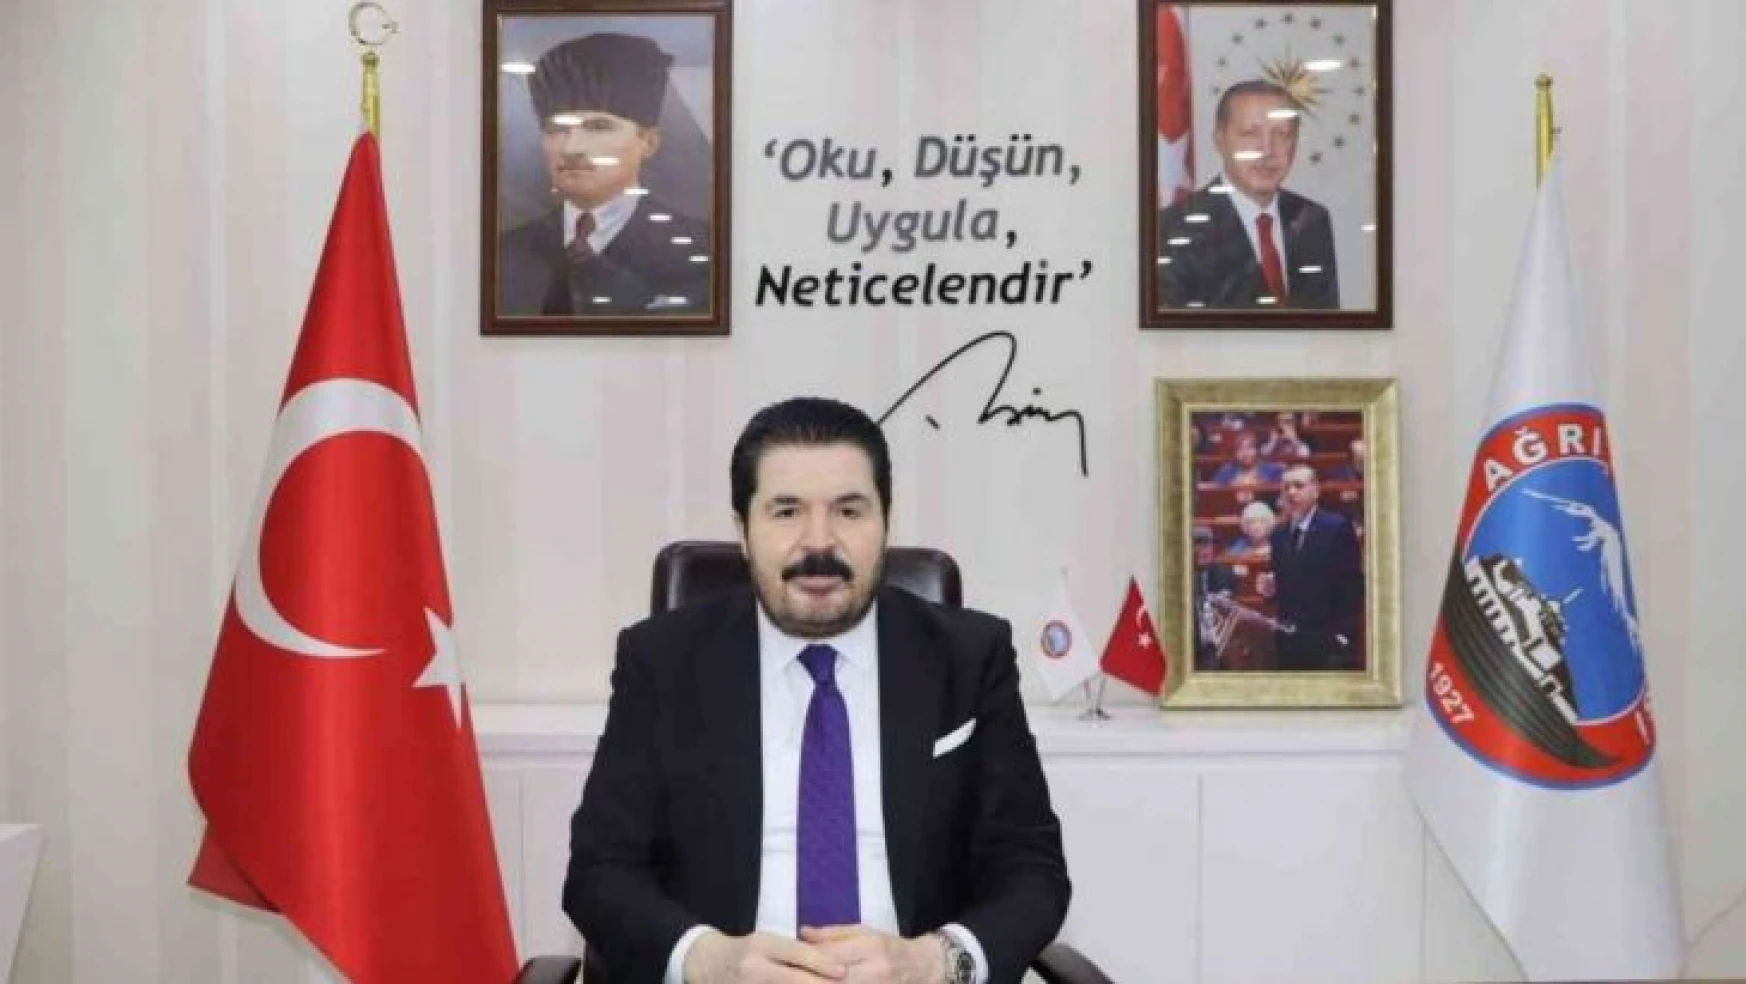 Savcı Sayan: 'Kaset olayı Türkiye'nin yeniden dizayn edilmesi olayıydı'